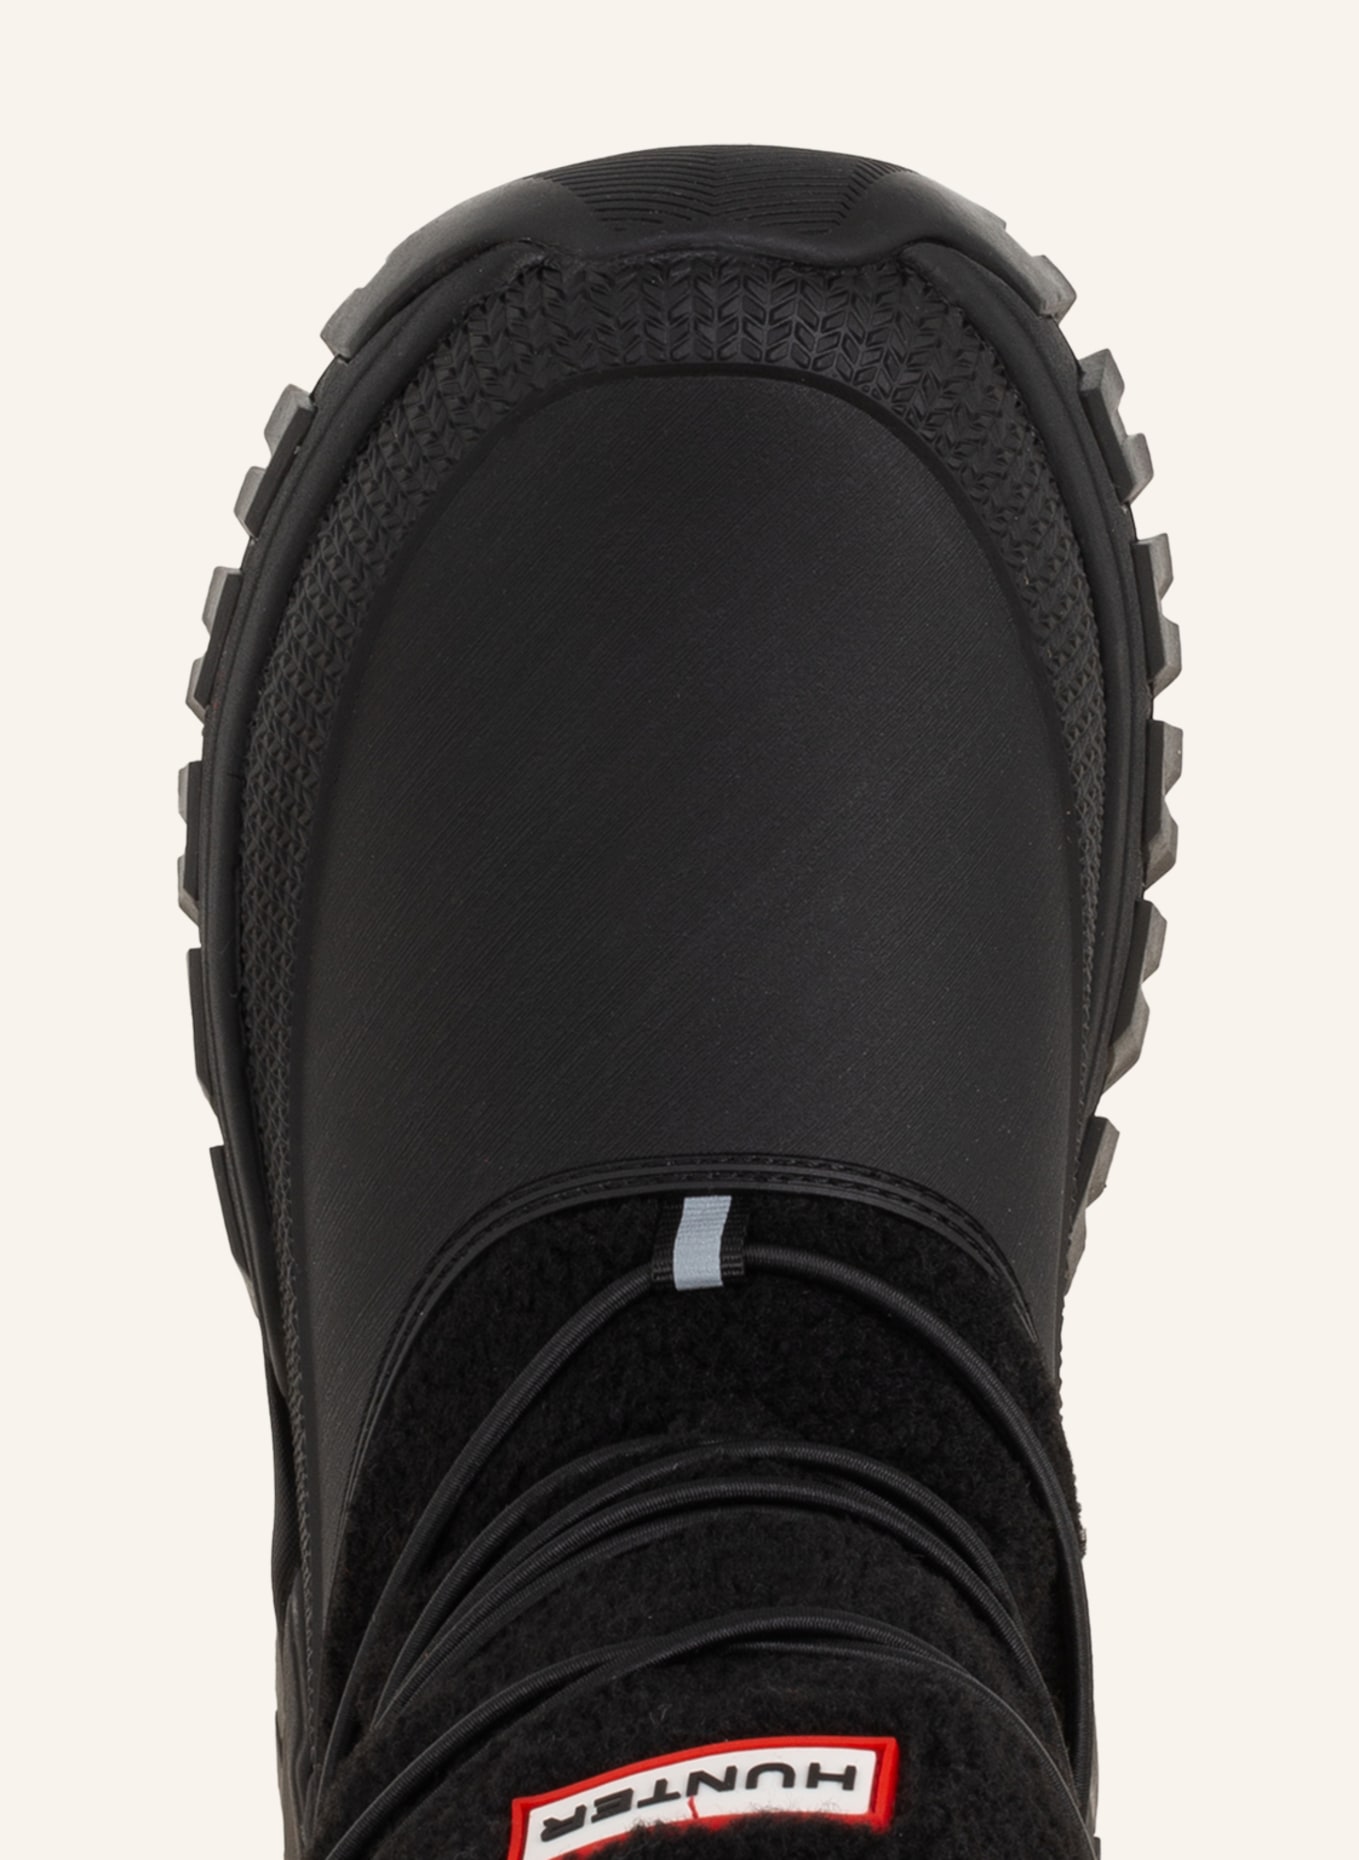 HUNTER Boots, Color: BLACK (Image 5)